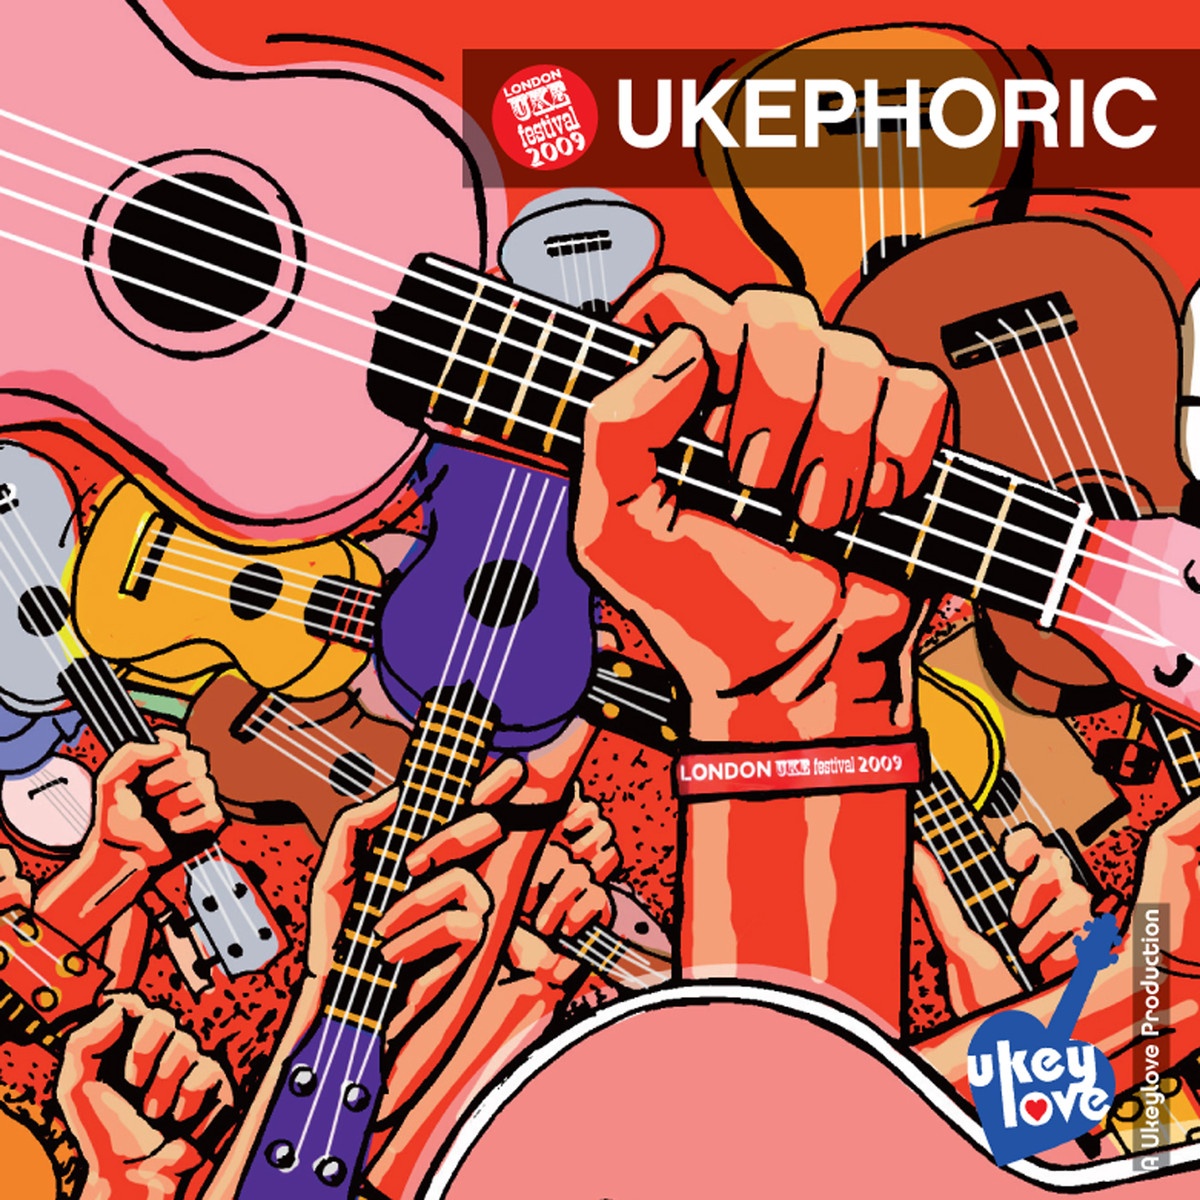 Ukephoric: The London Uke Festival 2009